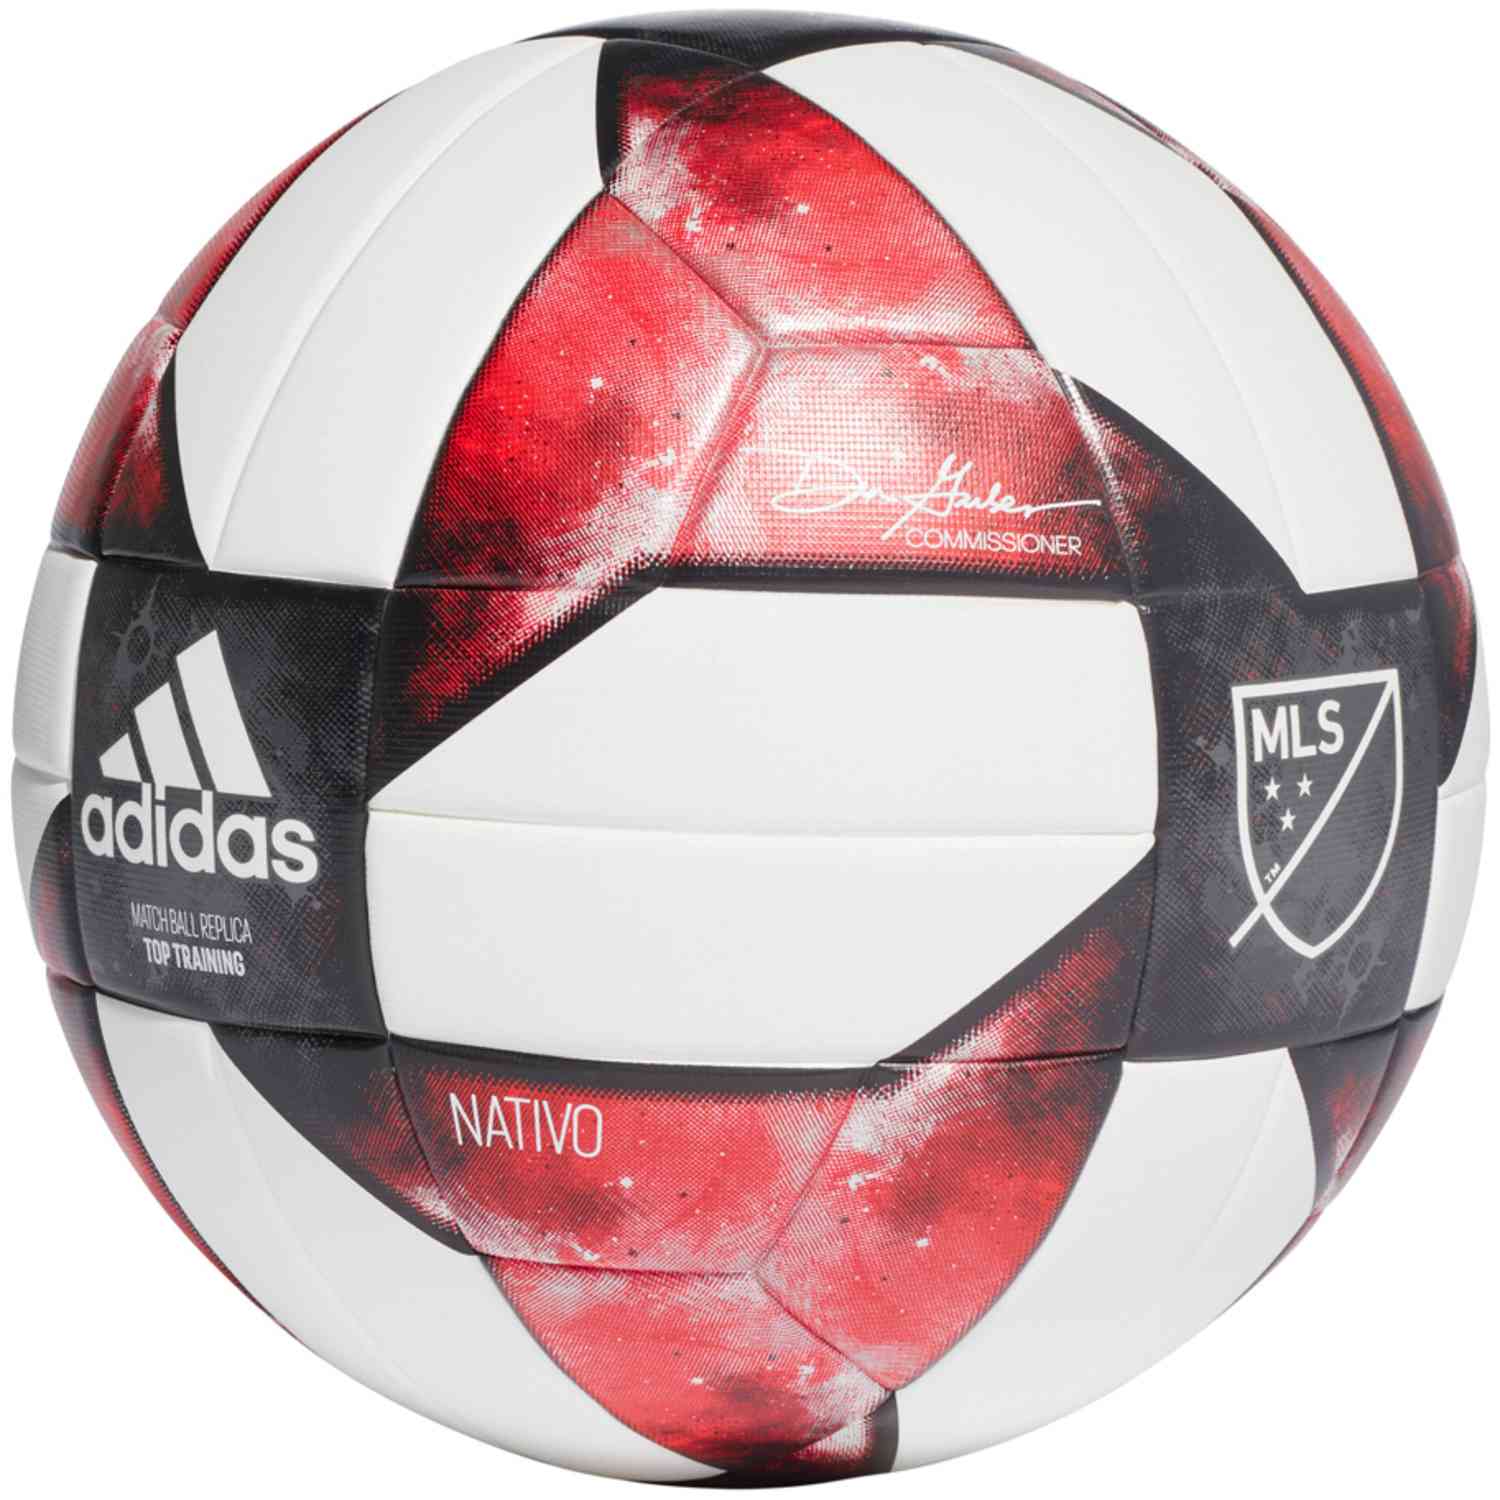 adidas MLS Nativo 19 Top Training Soccer Ball - SoccerPro